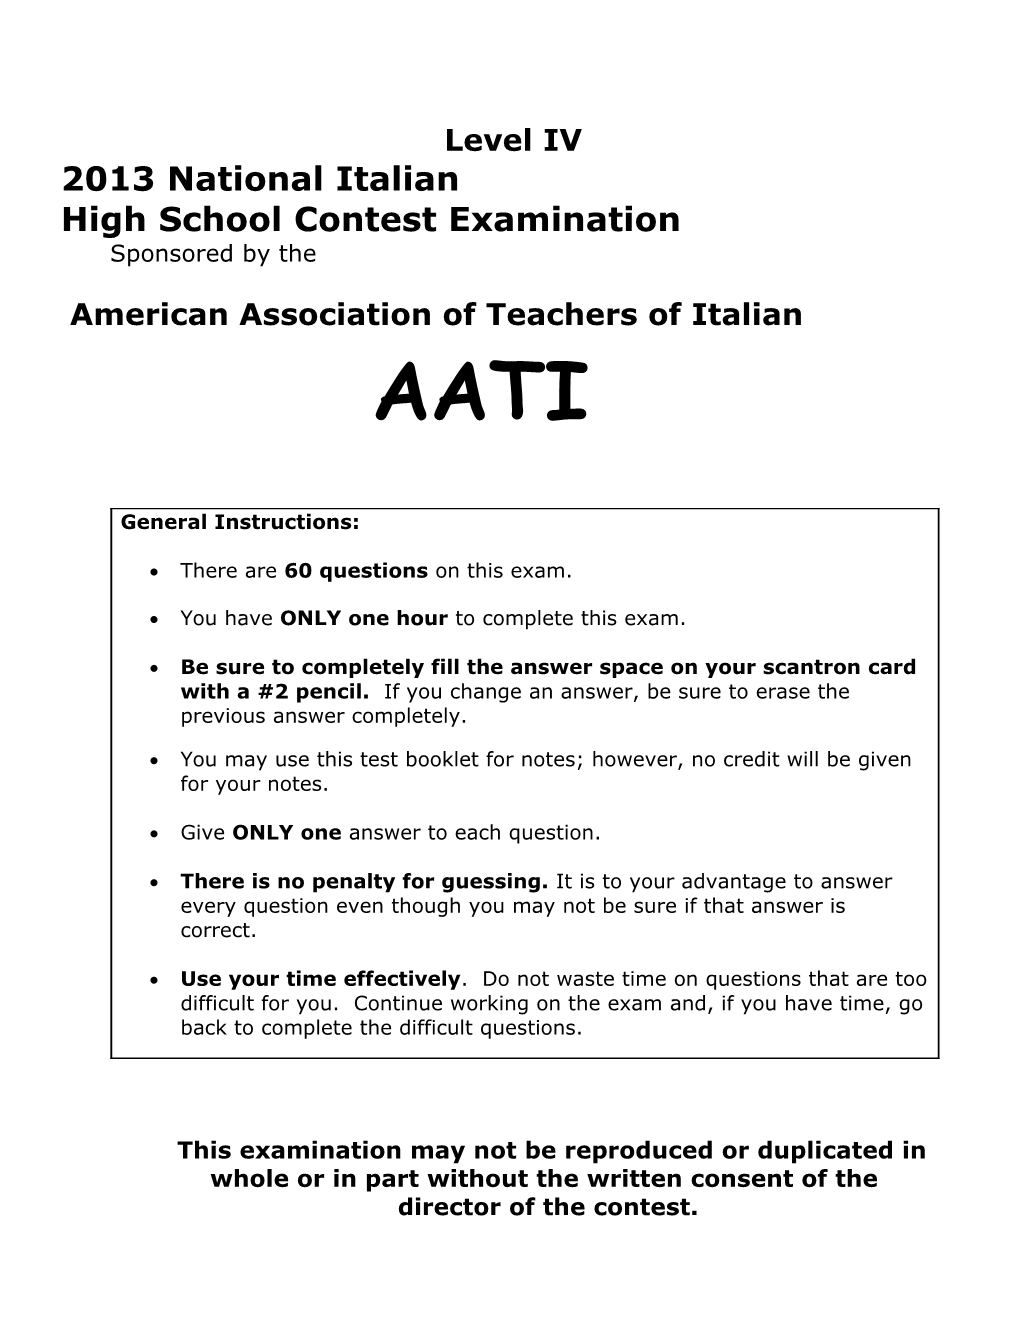 National Italian Examination